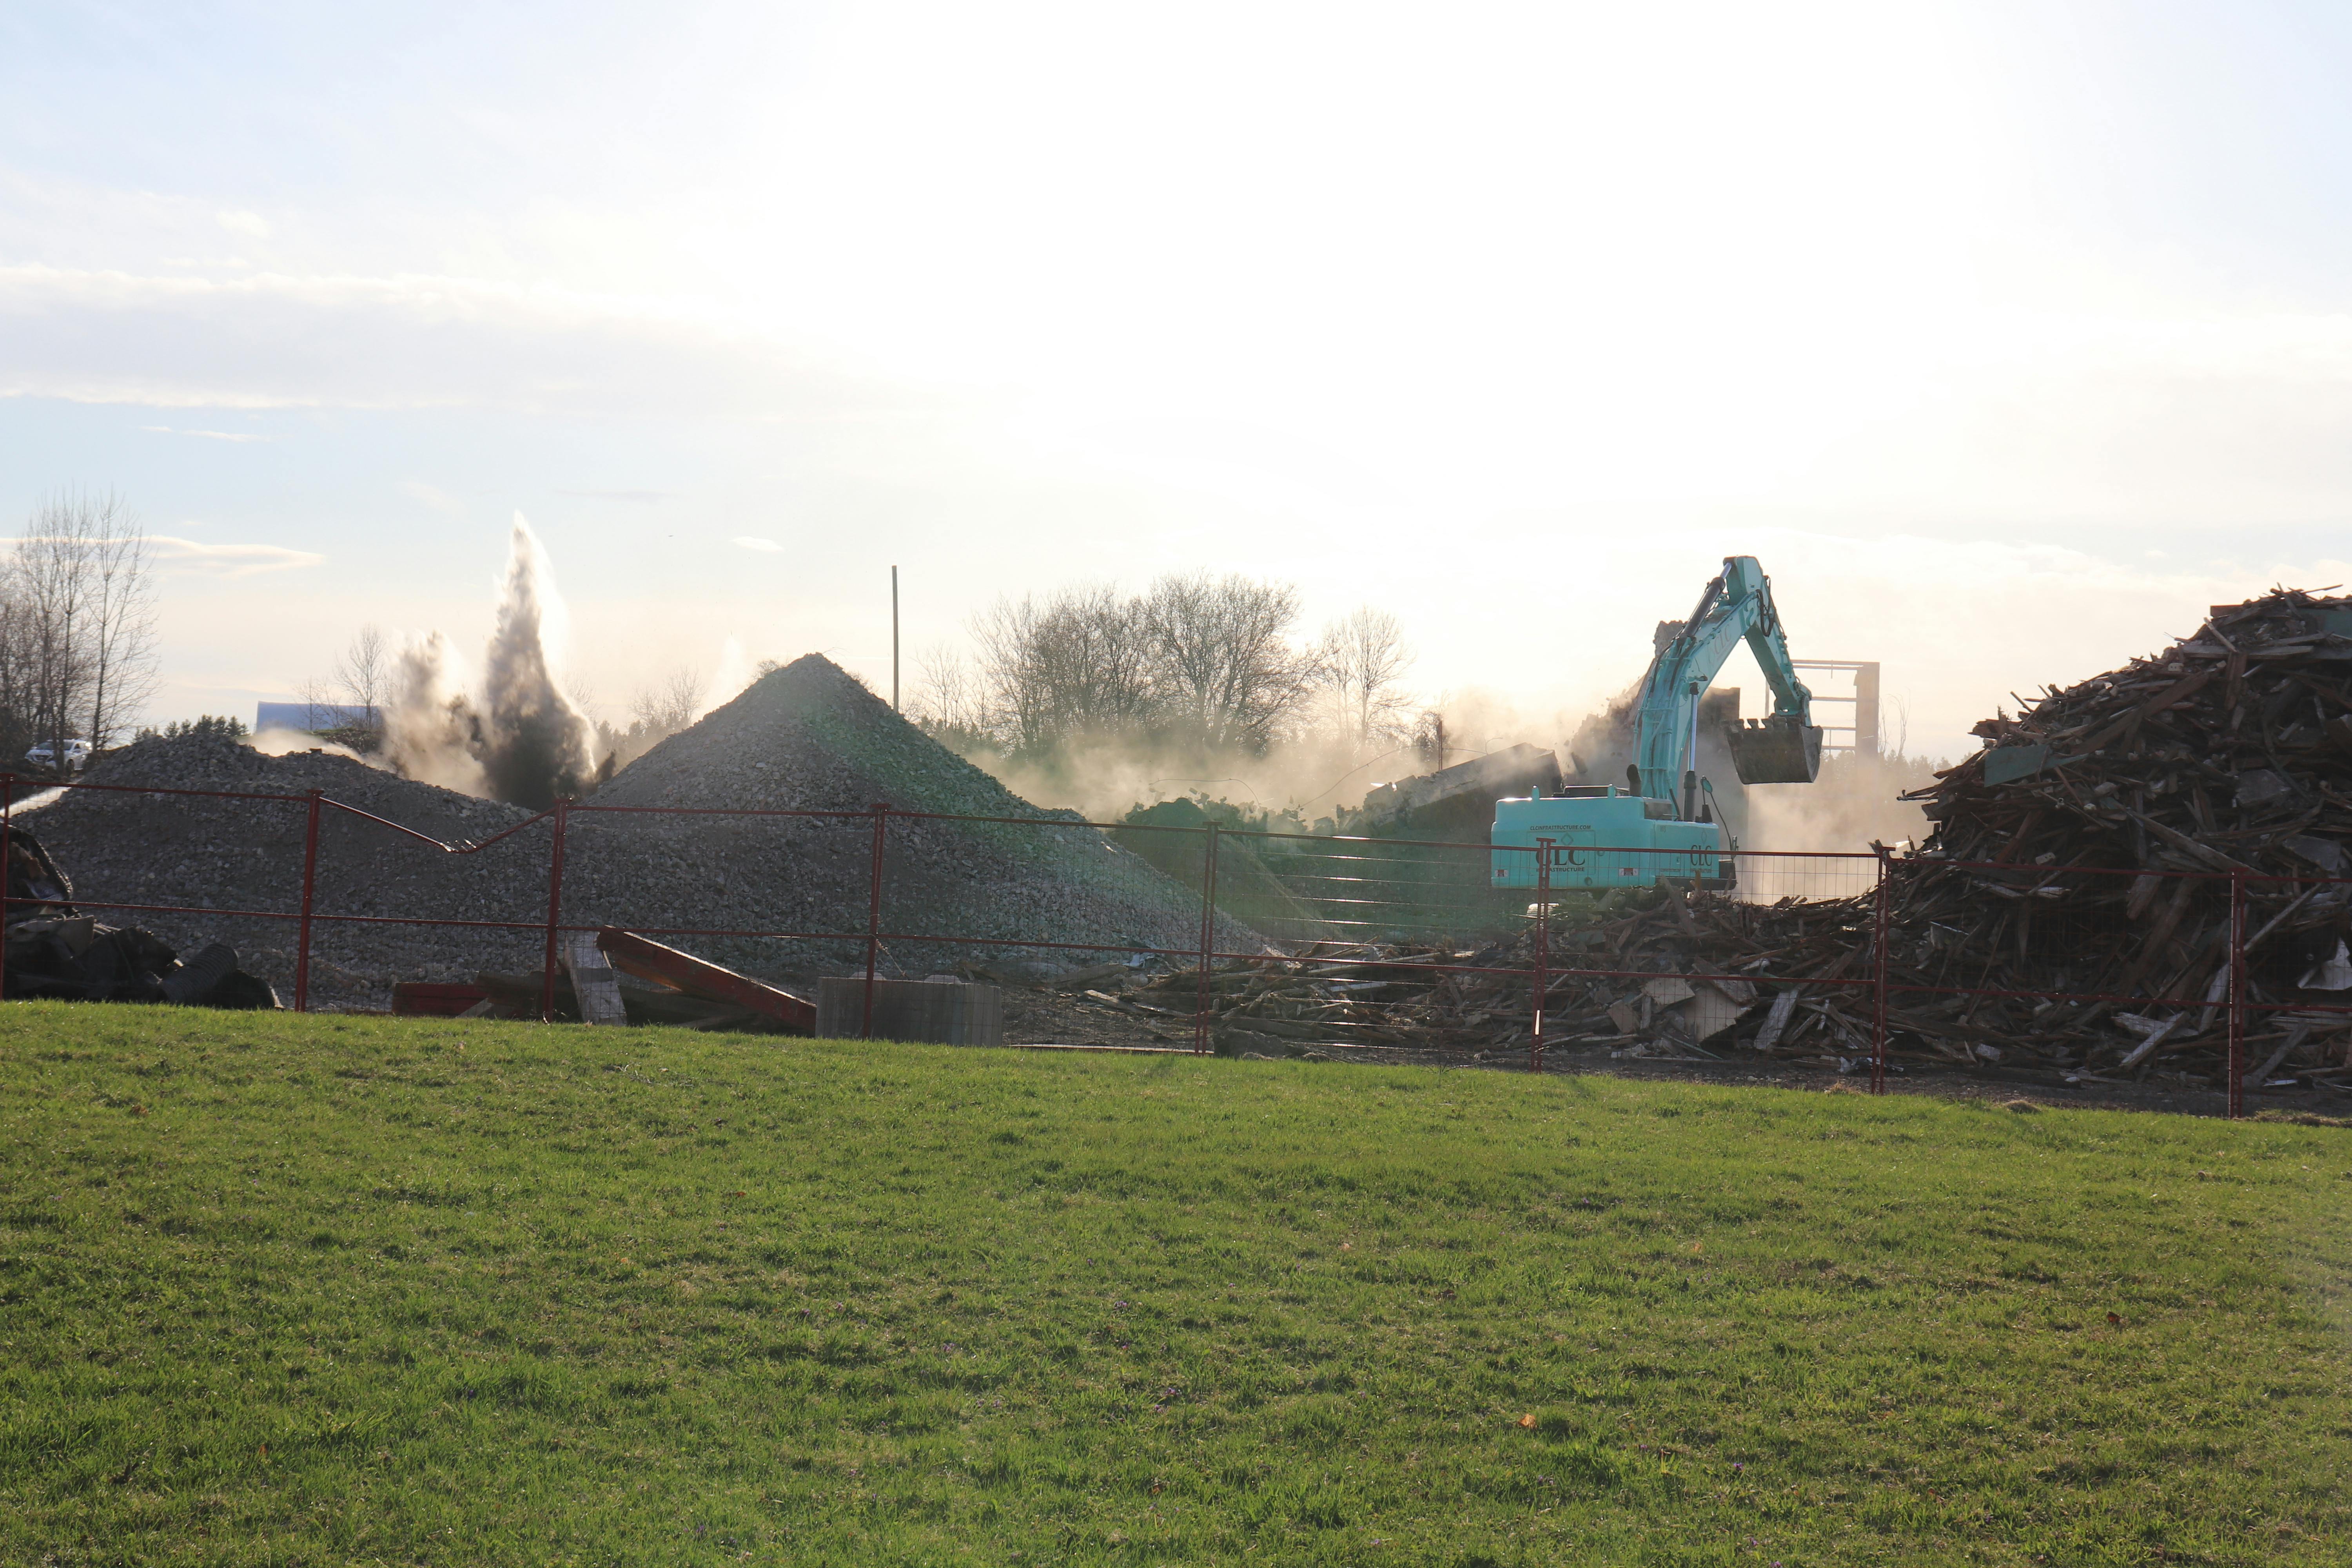 Demolition of Bogdon and Gross - April 9, 2021